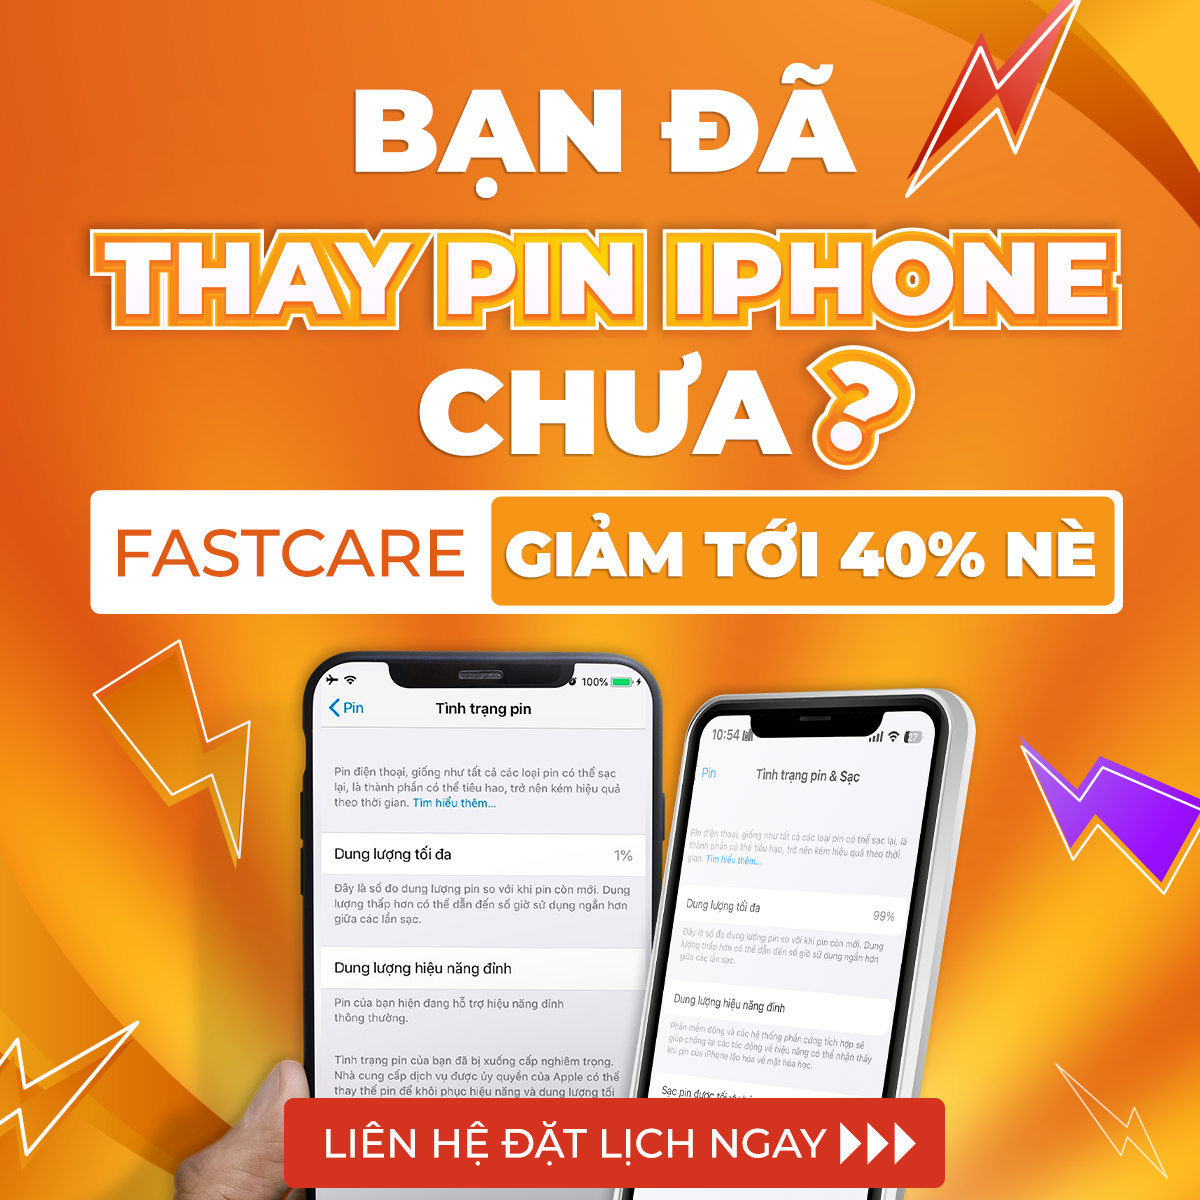 popup-fastcare-ban-da-thay-pin-iphone-chua-1000x1000